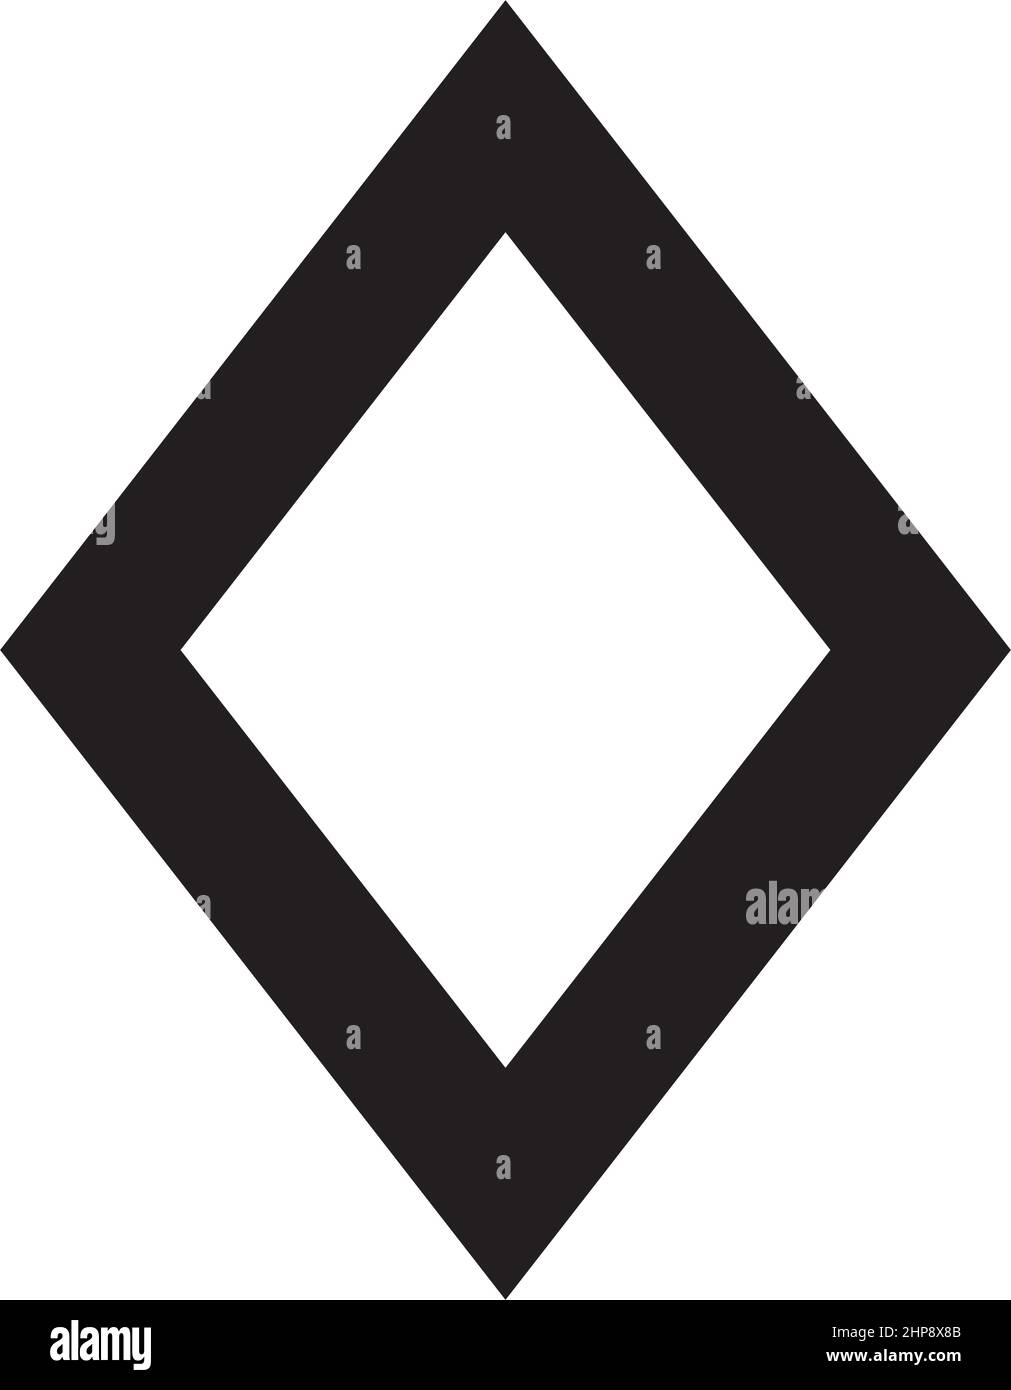 Symbole Rhombus forme vecteur icône contour contour pour la création graphique élément d'interface utilisateur dans une illustration de pictogramme Illustration de Vecteur